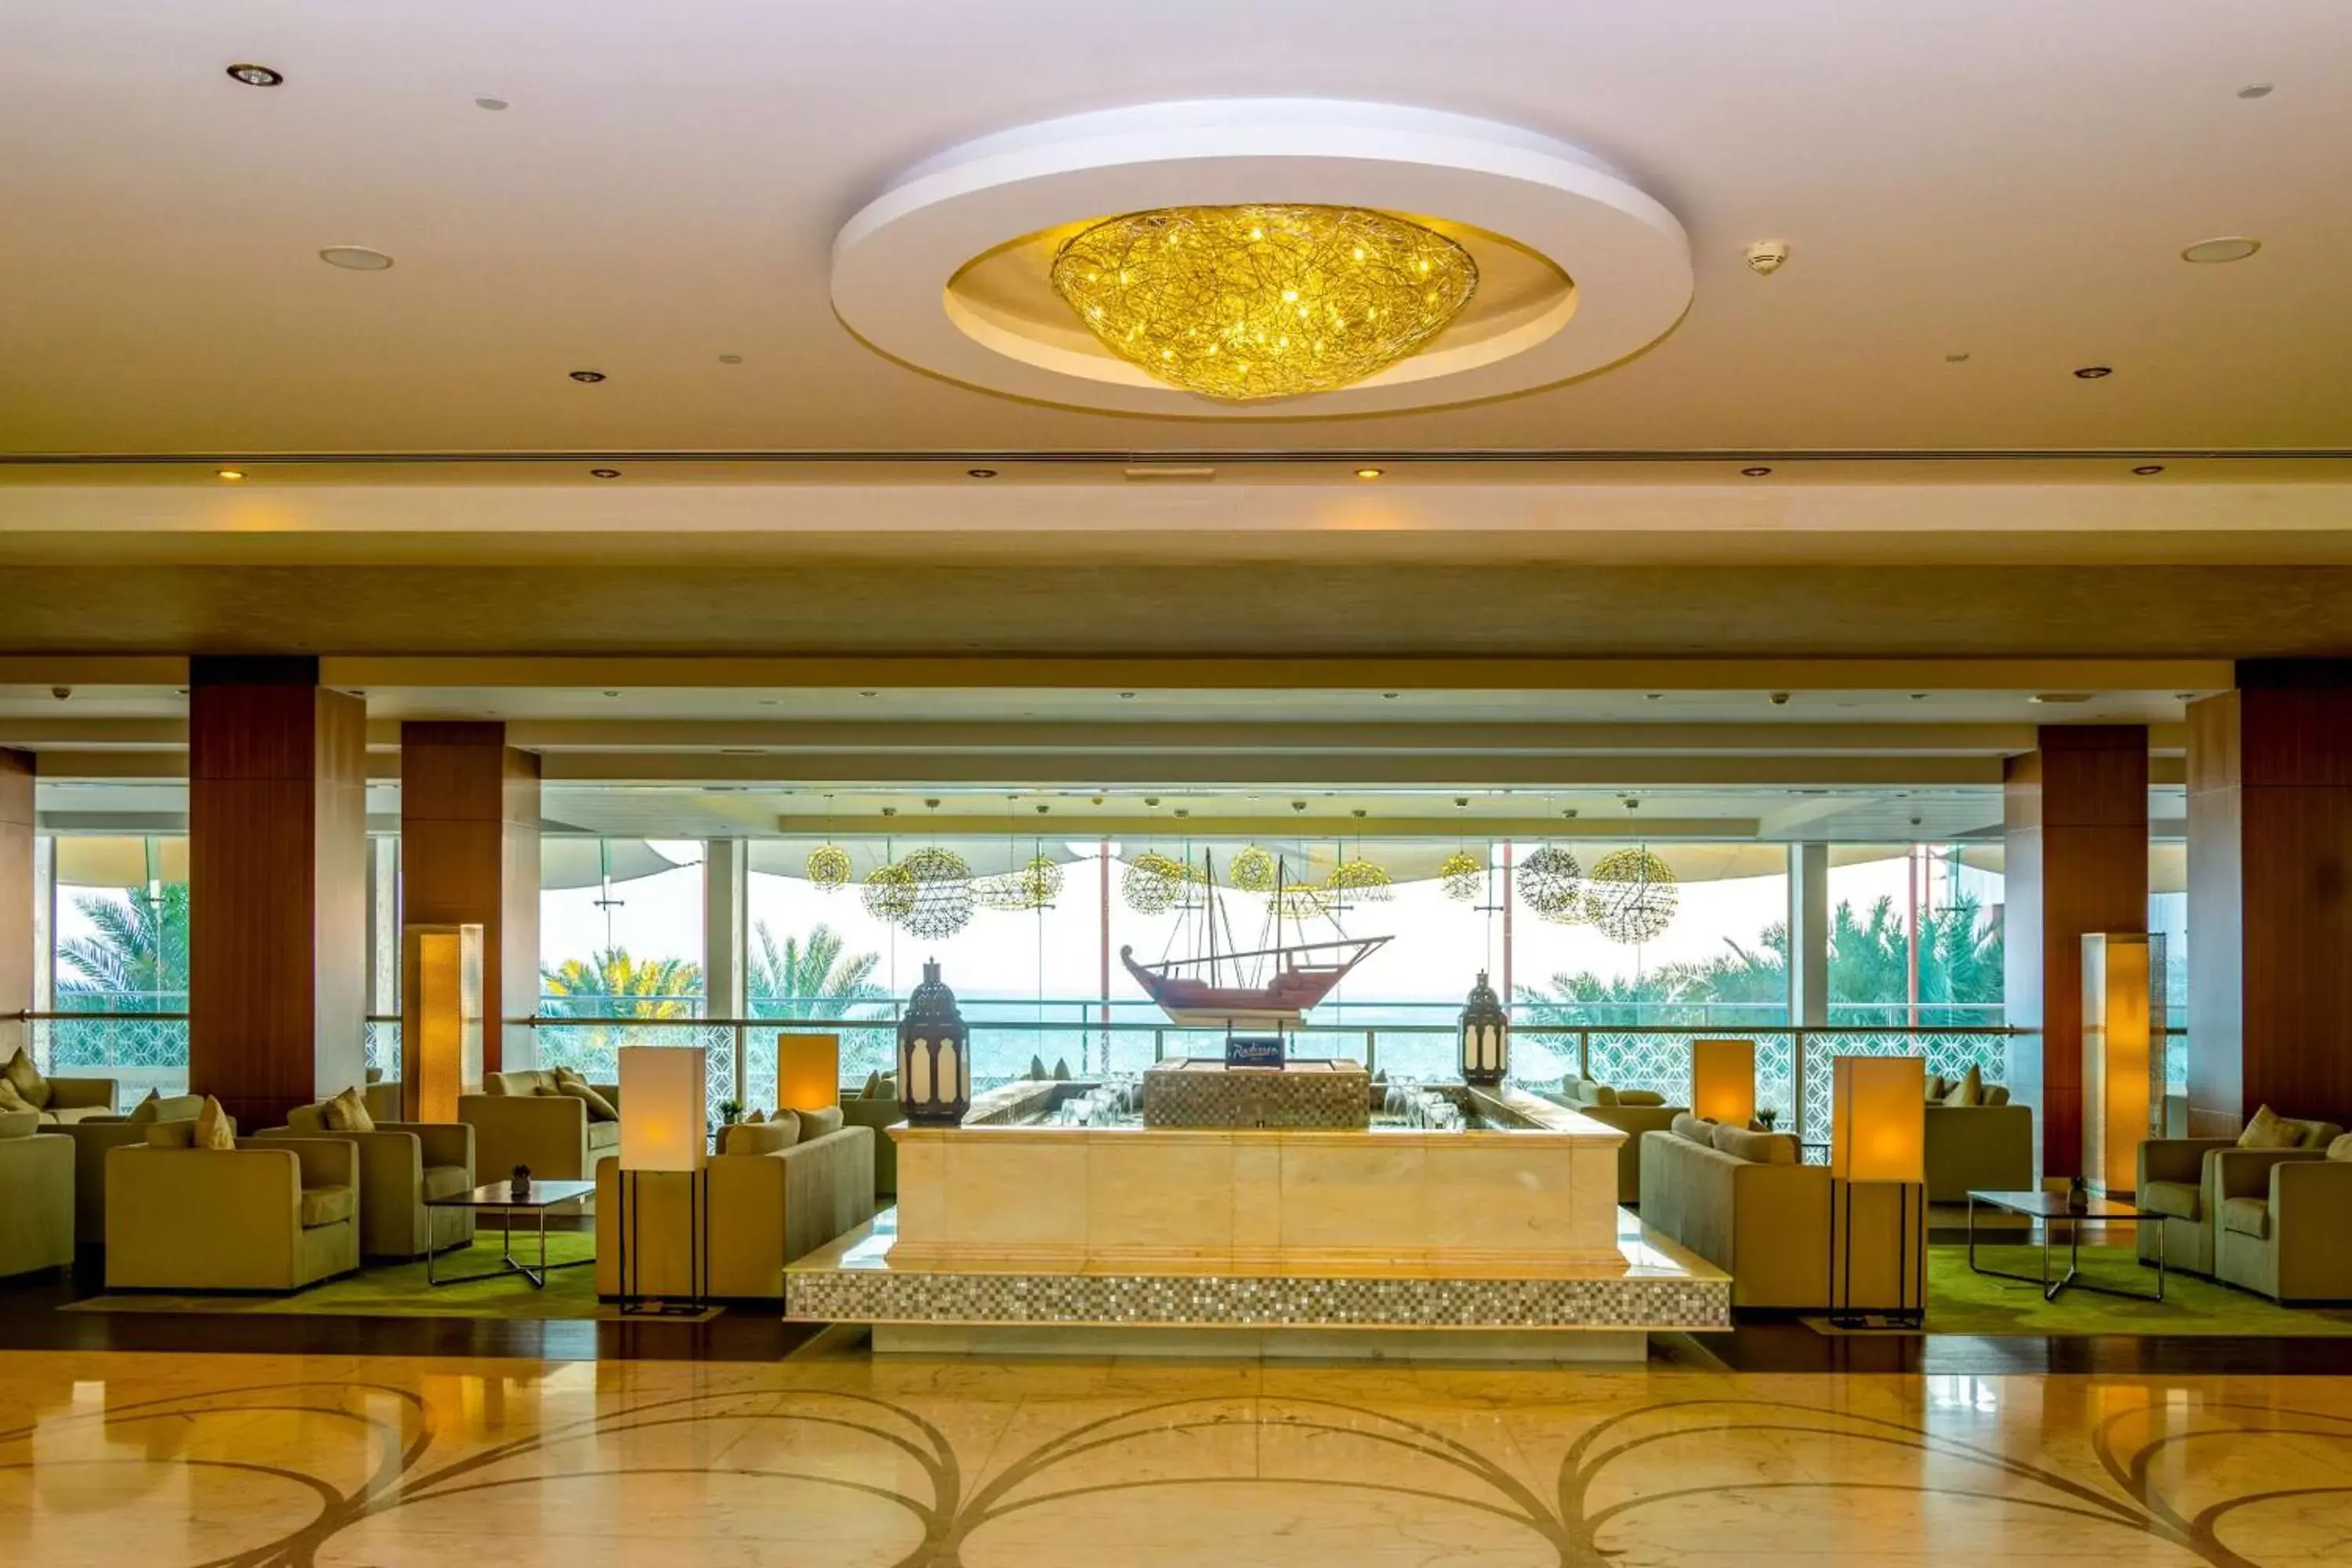 Lobby or reception in Radisson Blu Hotel Sohar